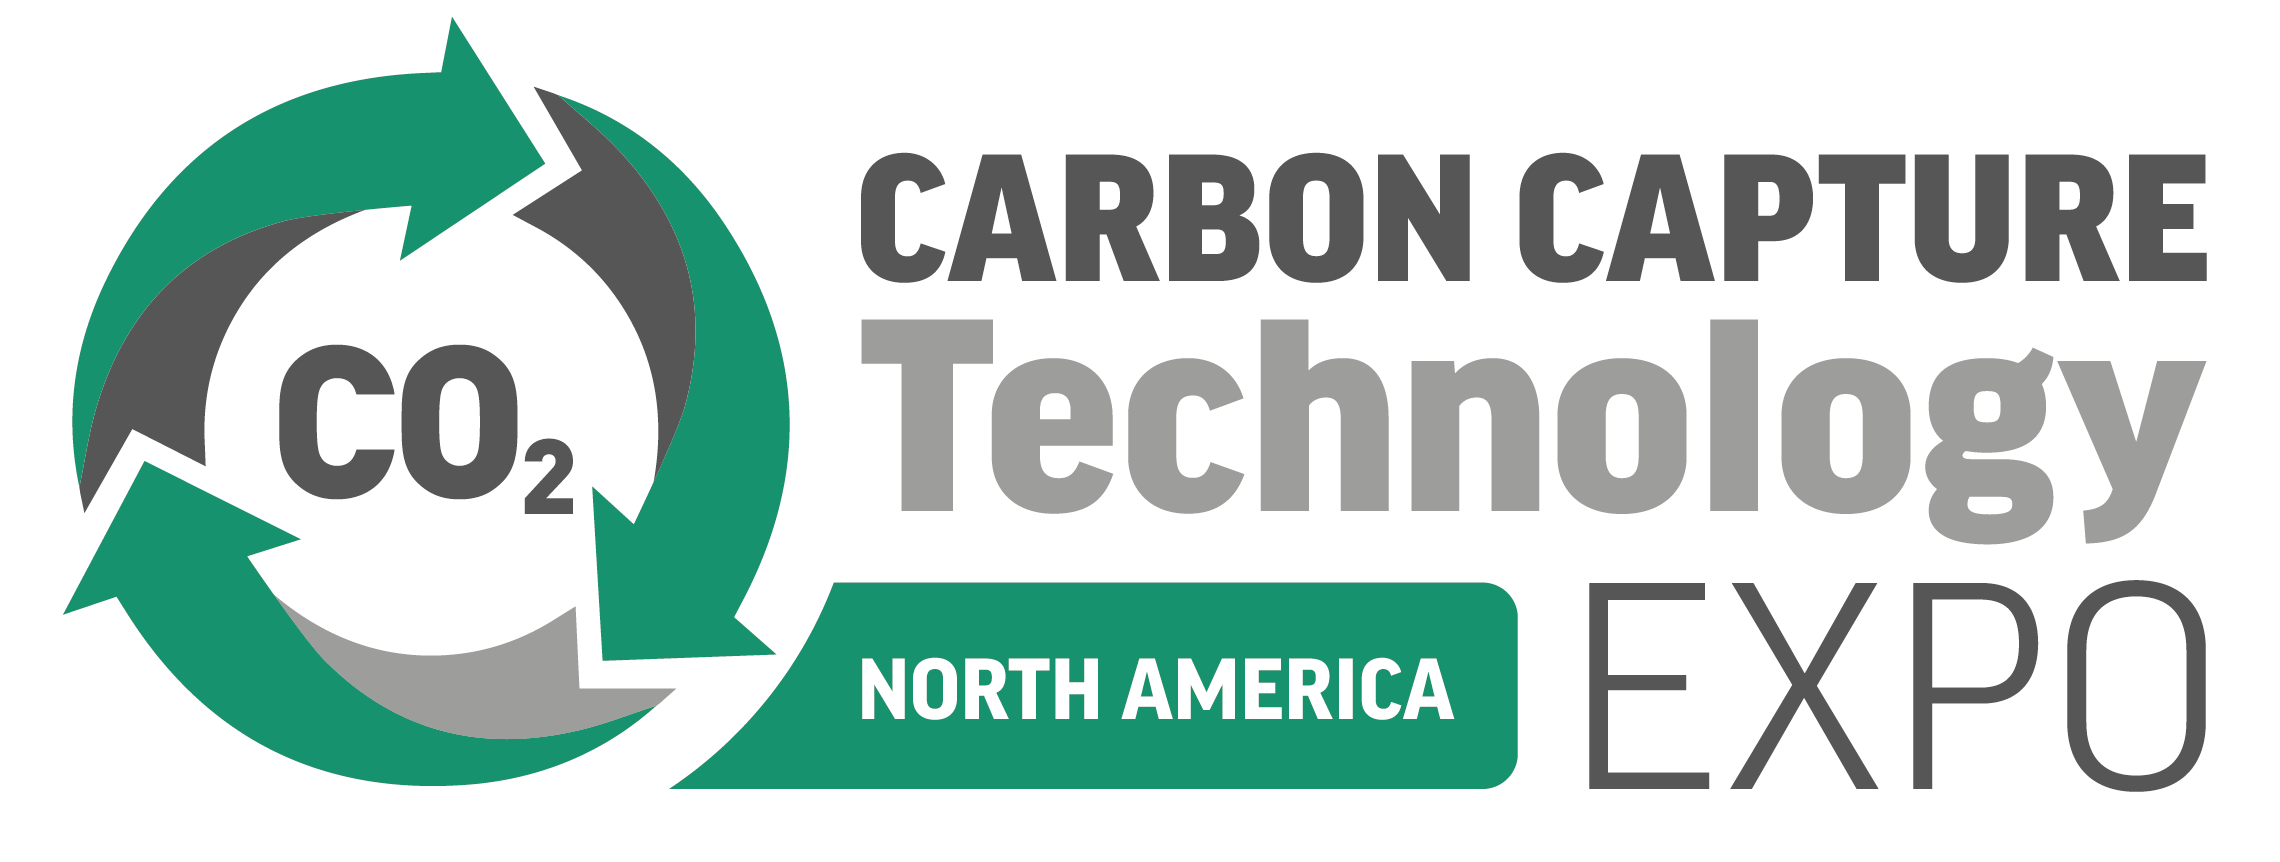 Carbon Capture Technology Expo